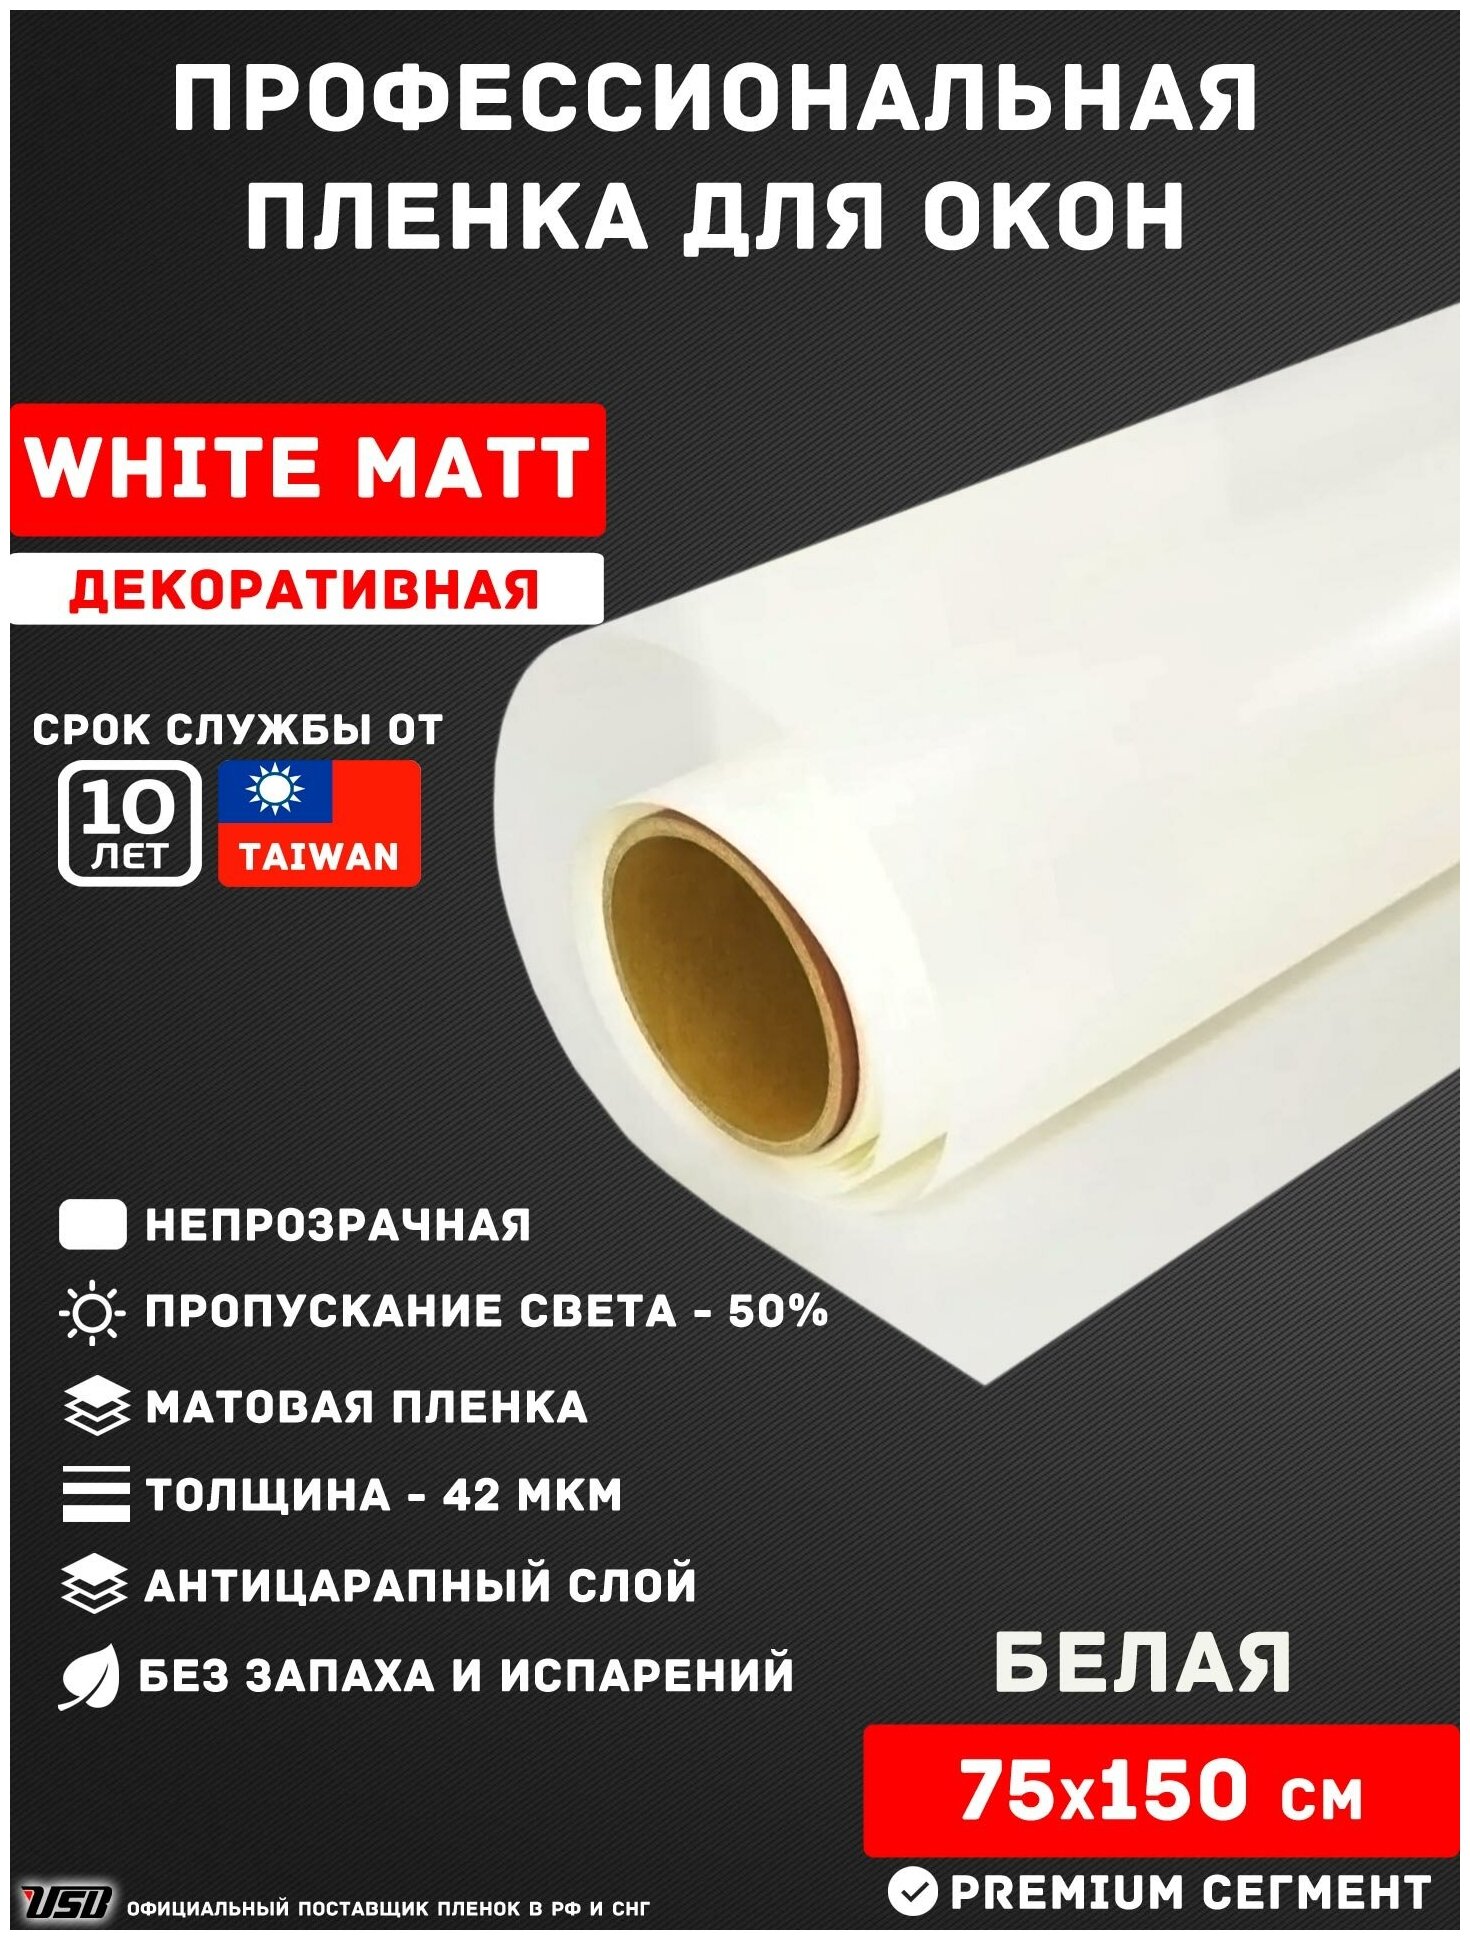 Белая матовая пленка для окон USB White Matt (рулон 0,75х1,5 метра), декоративная непрозрачная пленка для перегородок, балконов и лоджий